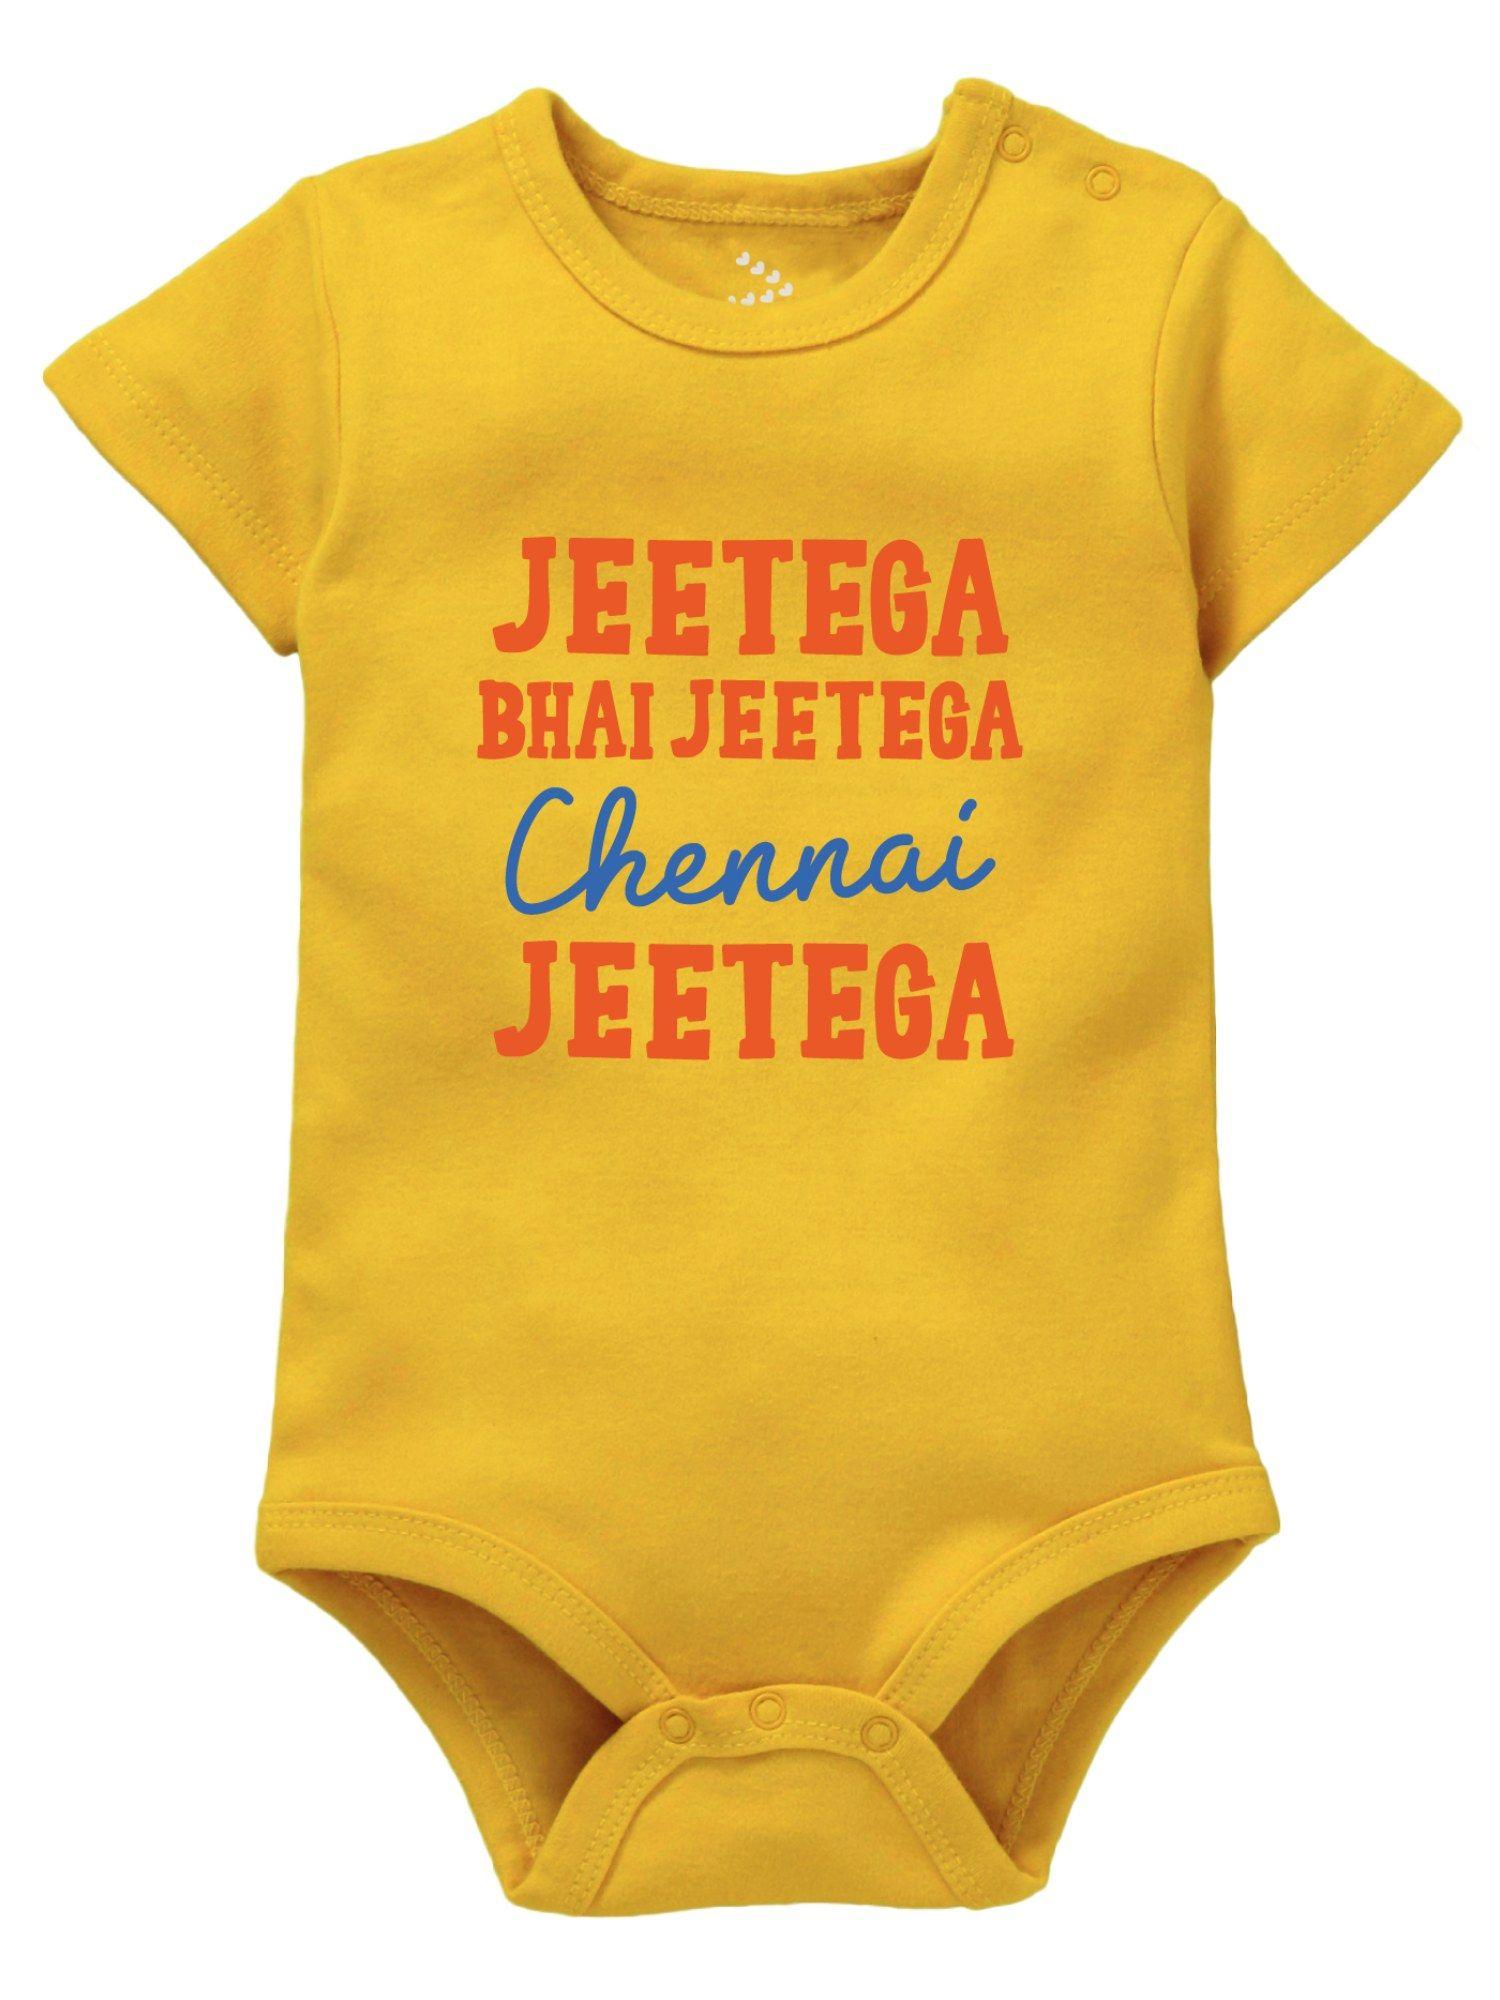 cricket-baby-csk-bodysuit-jeetega-chennai-jeetega-yellow